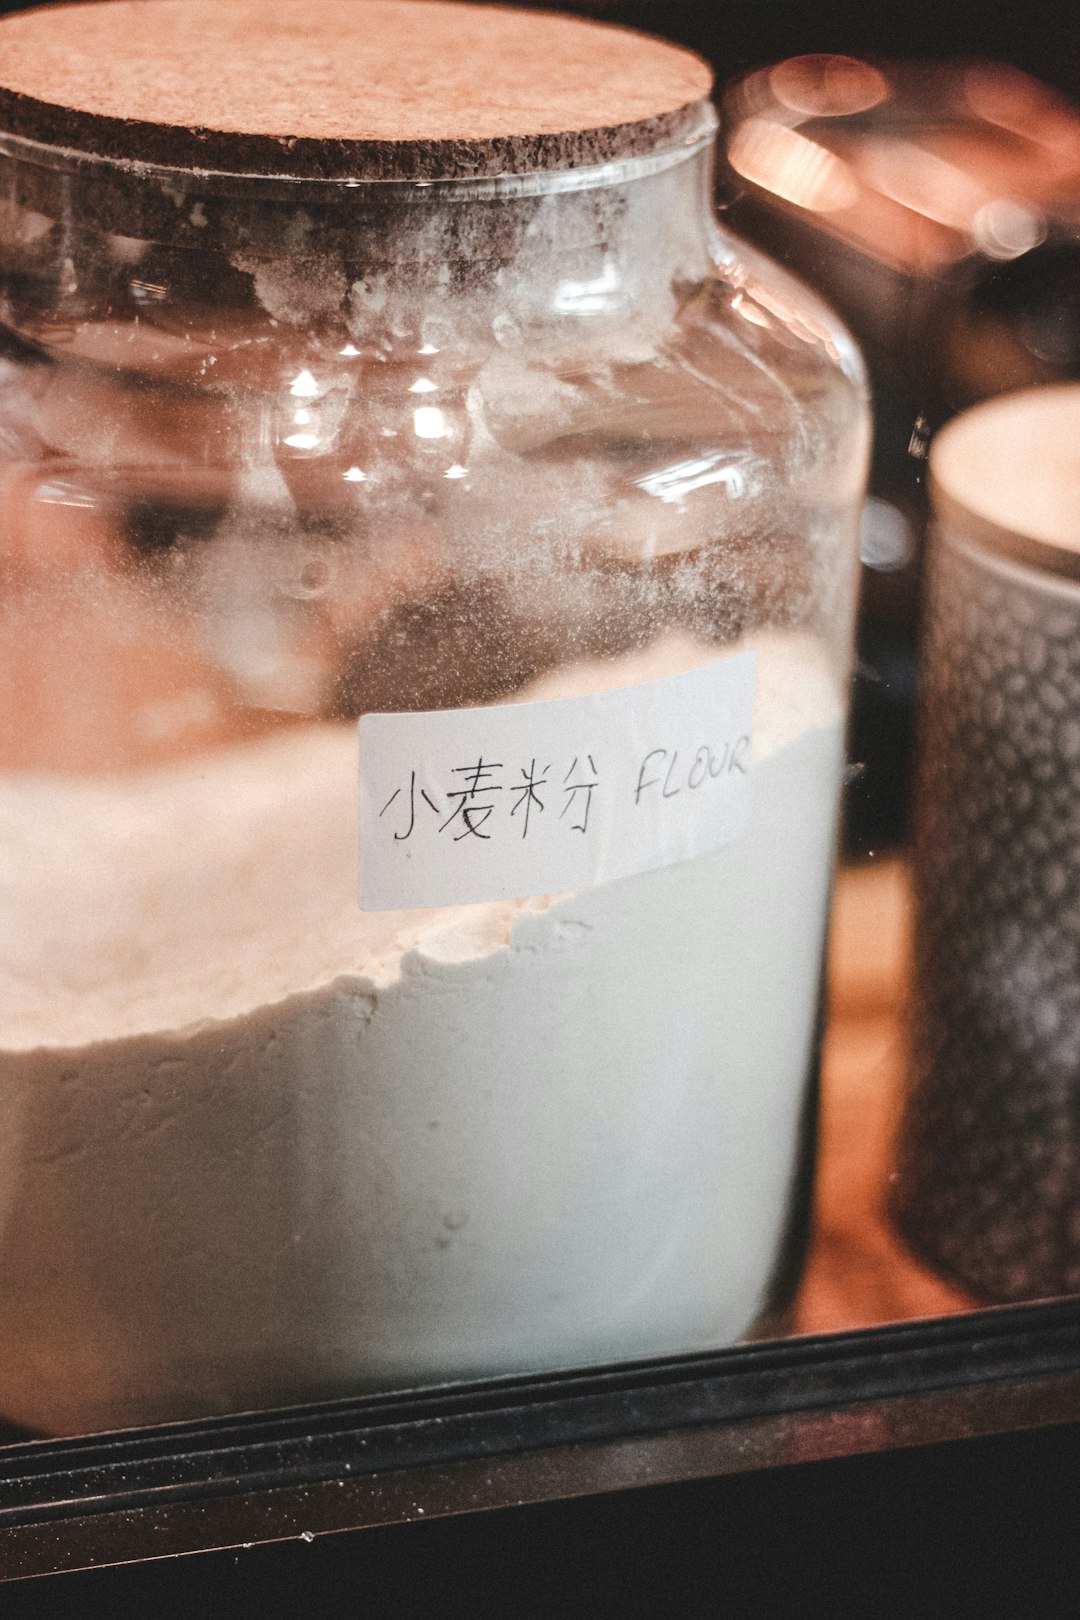 clear glass jar with white powder